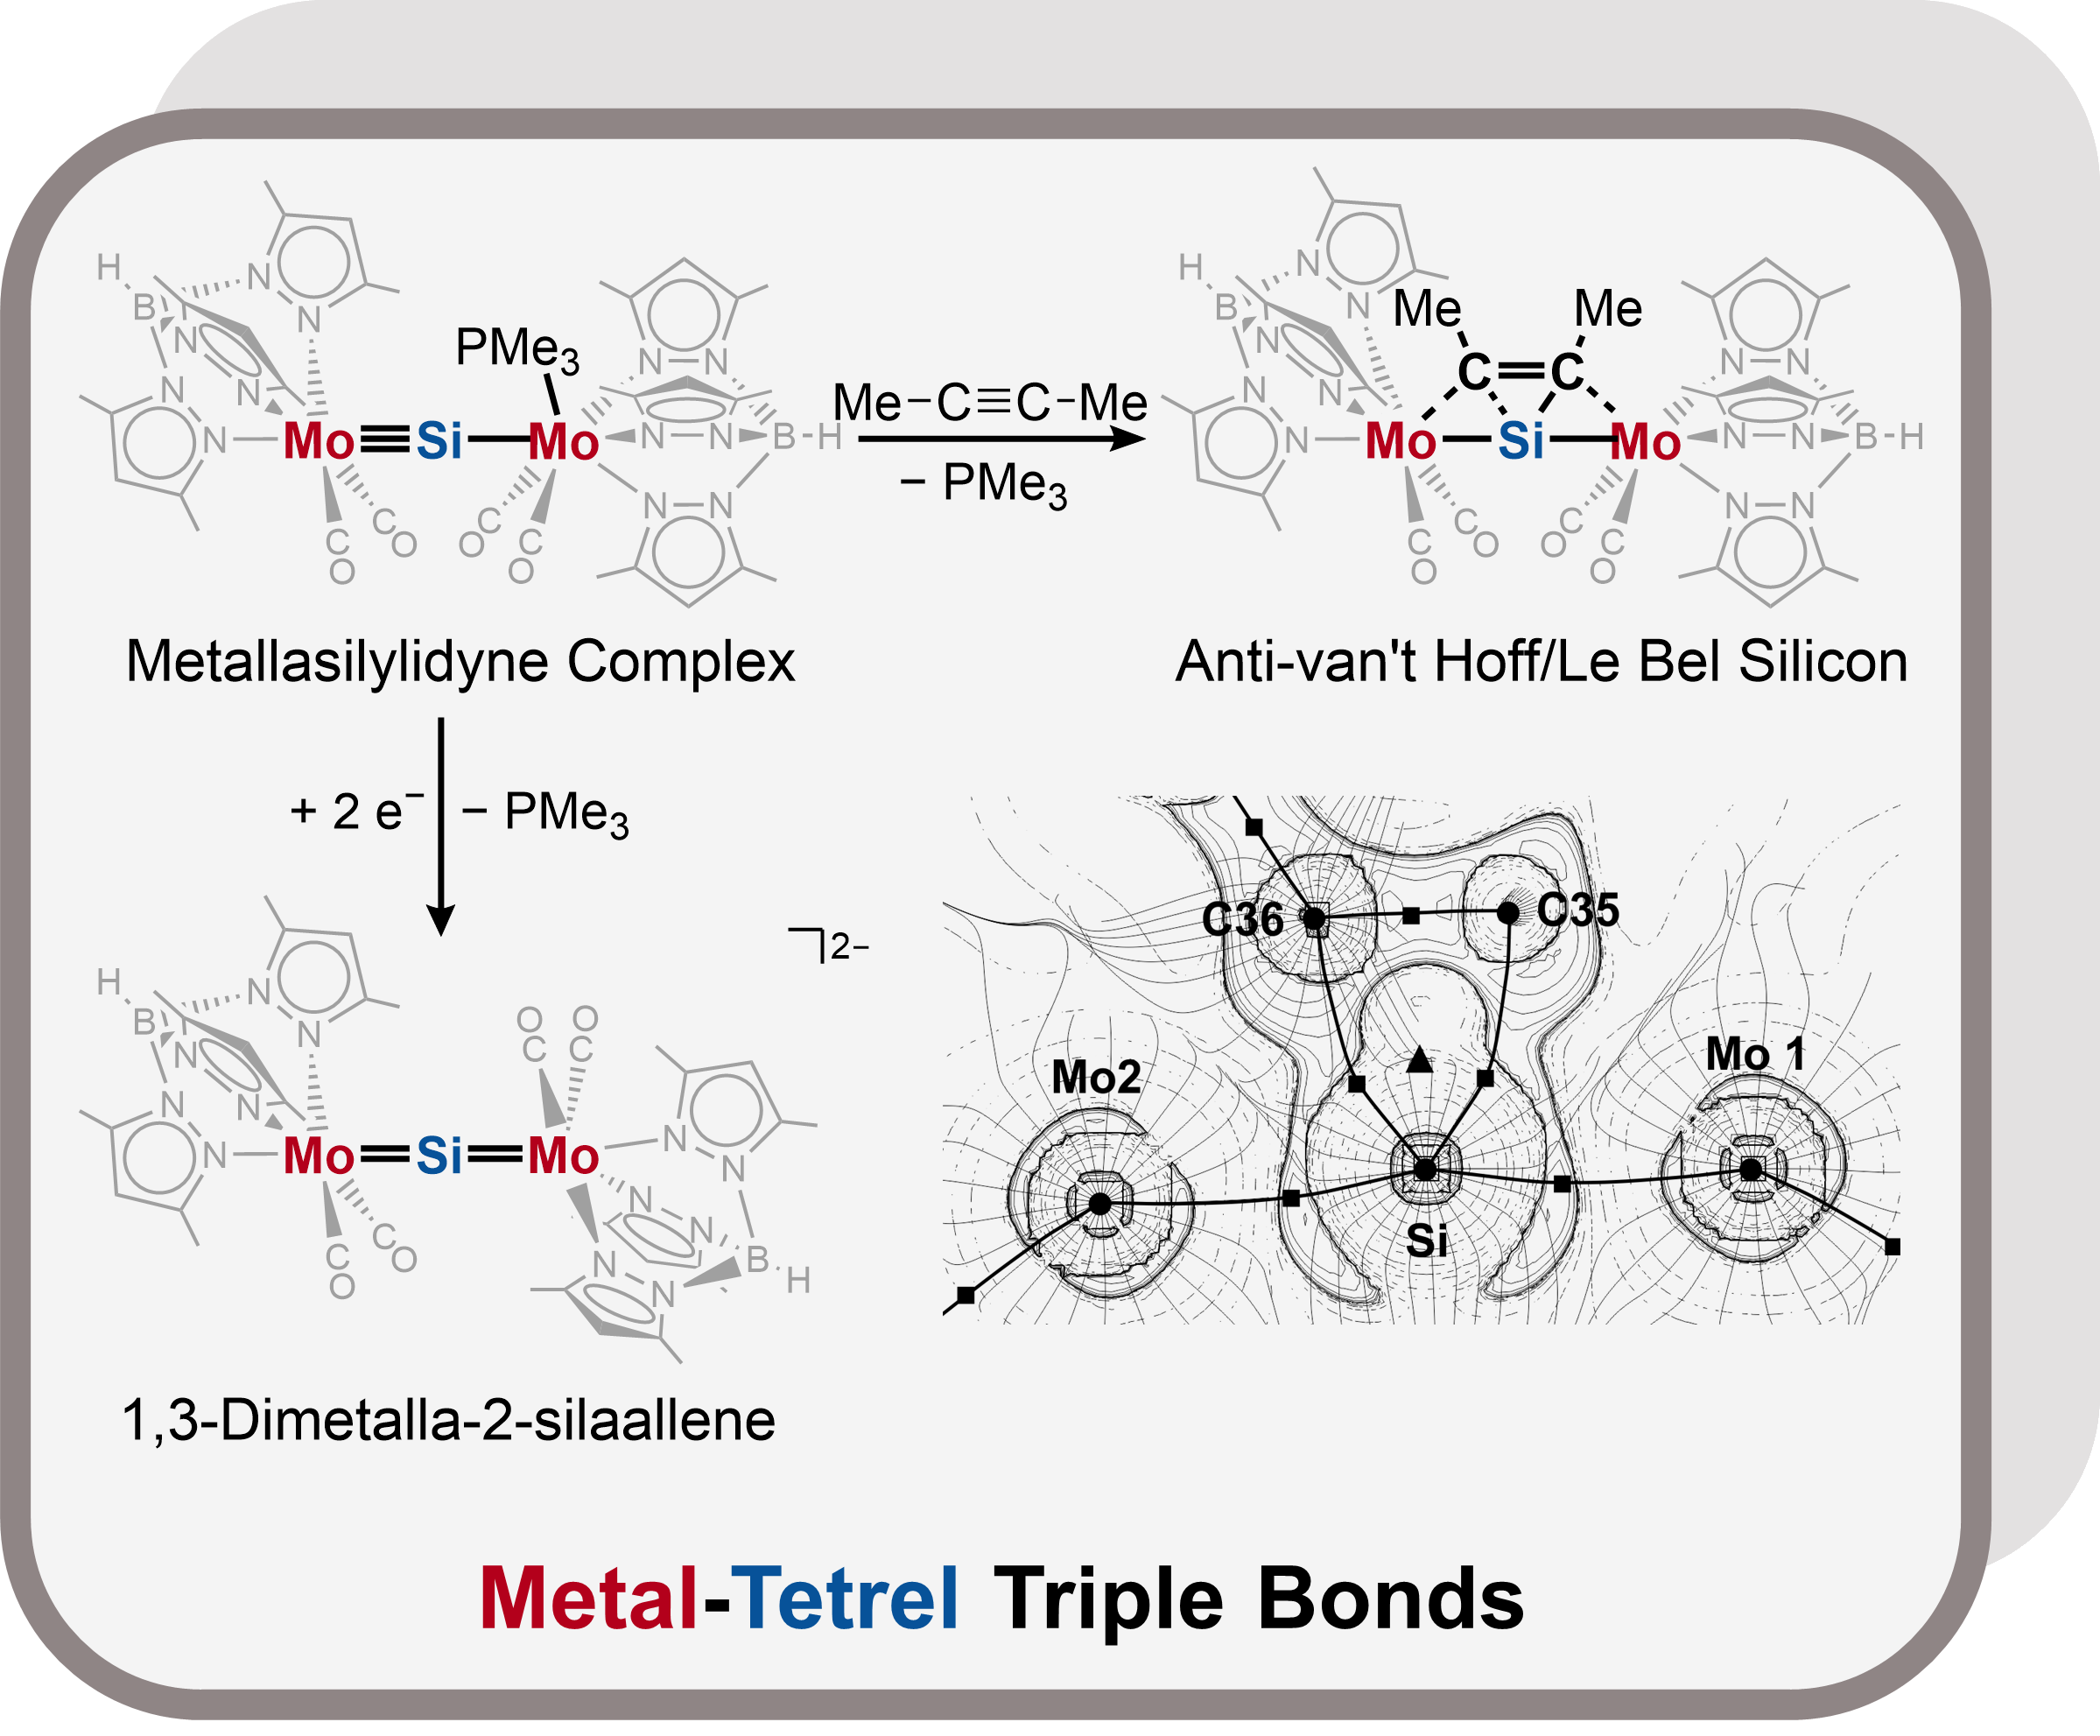 Metal-Tetrel Triple Bonds